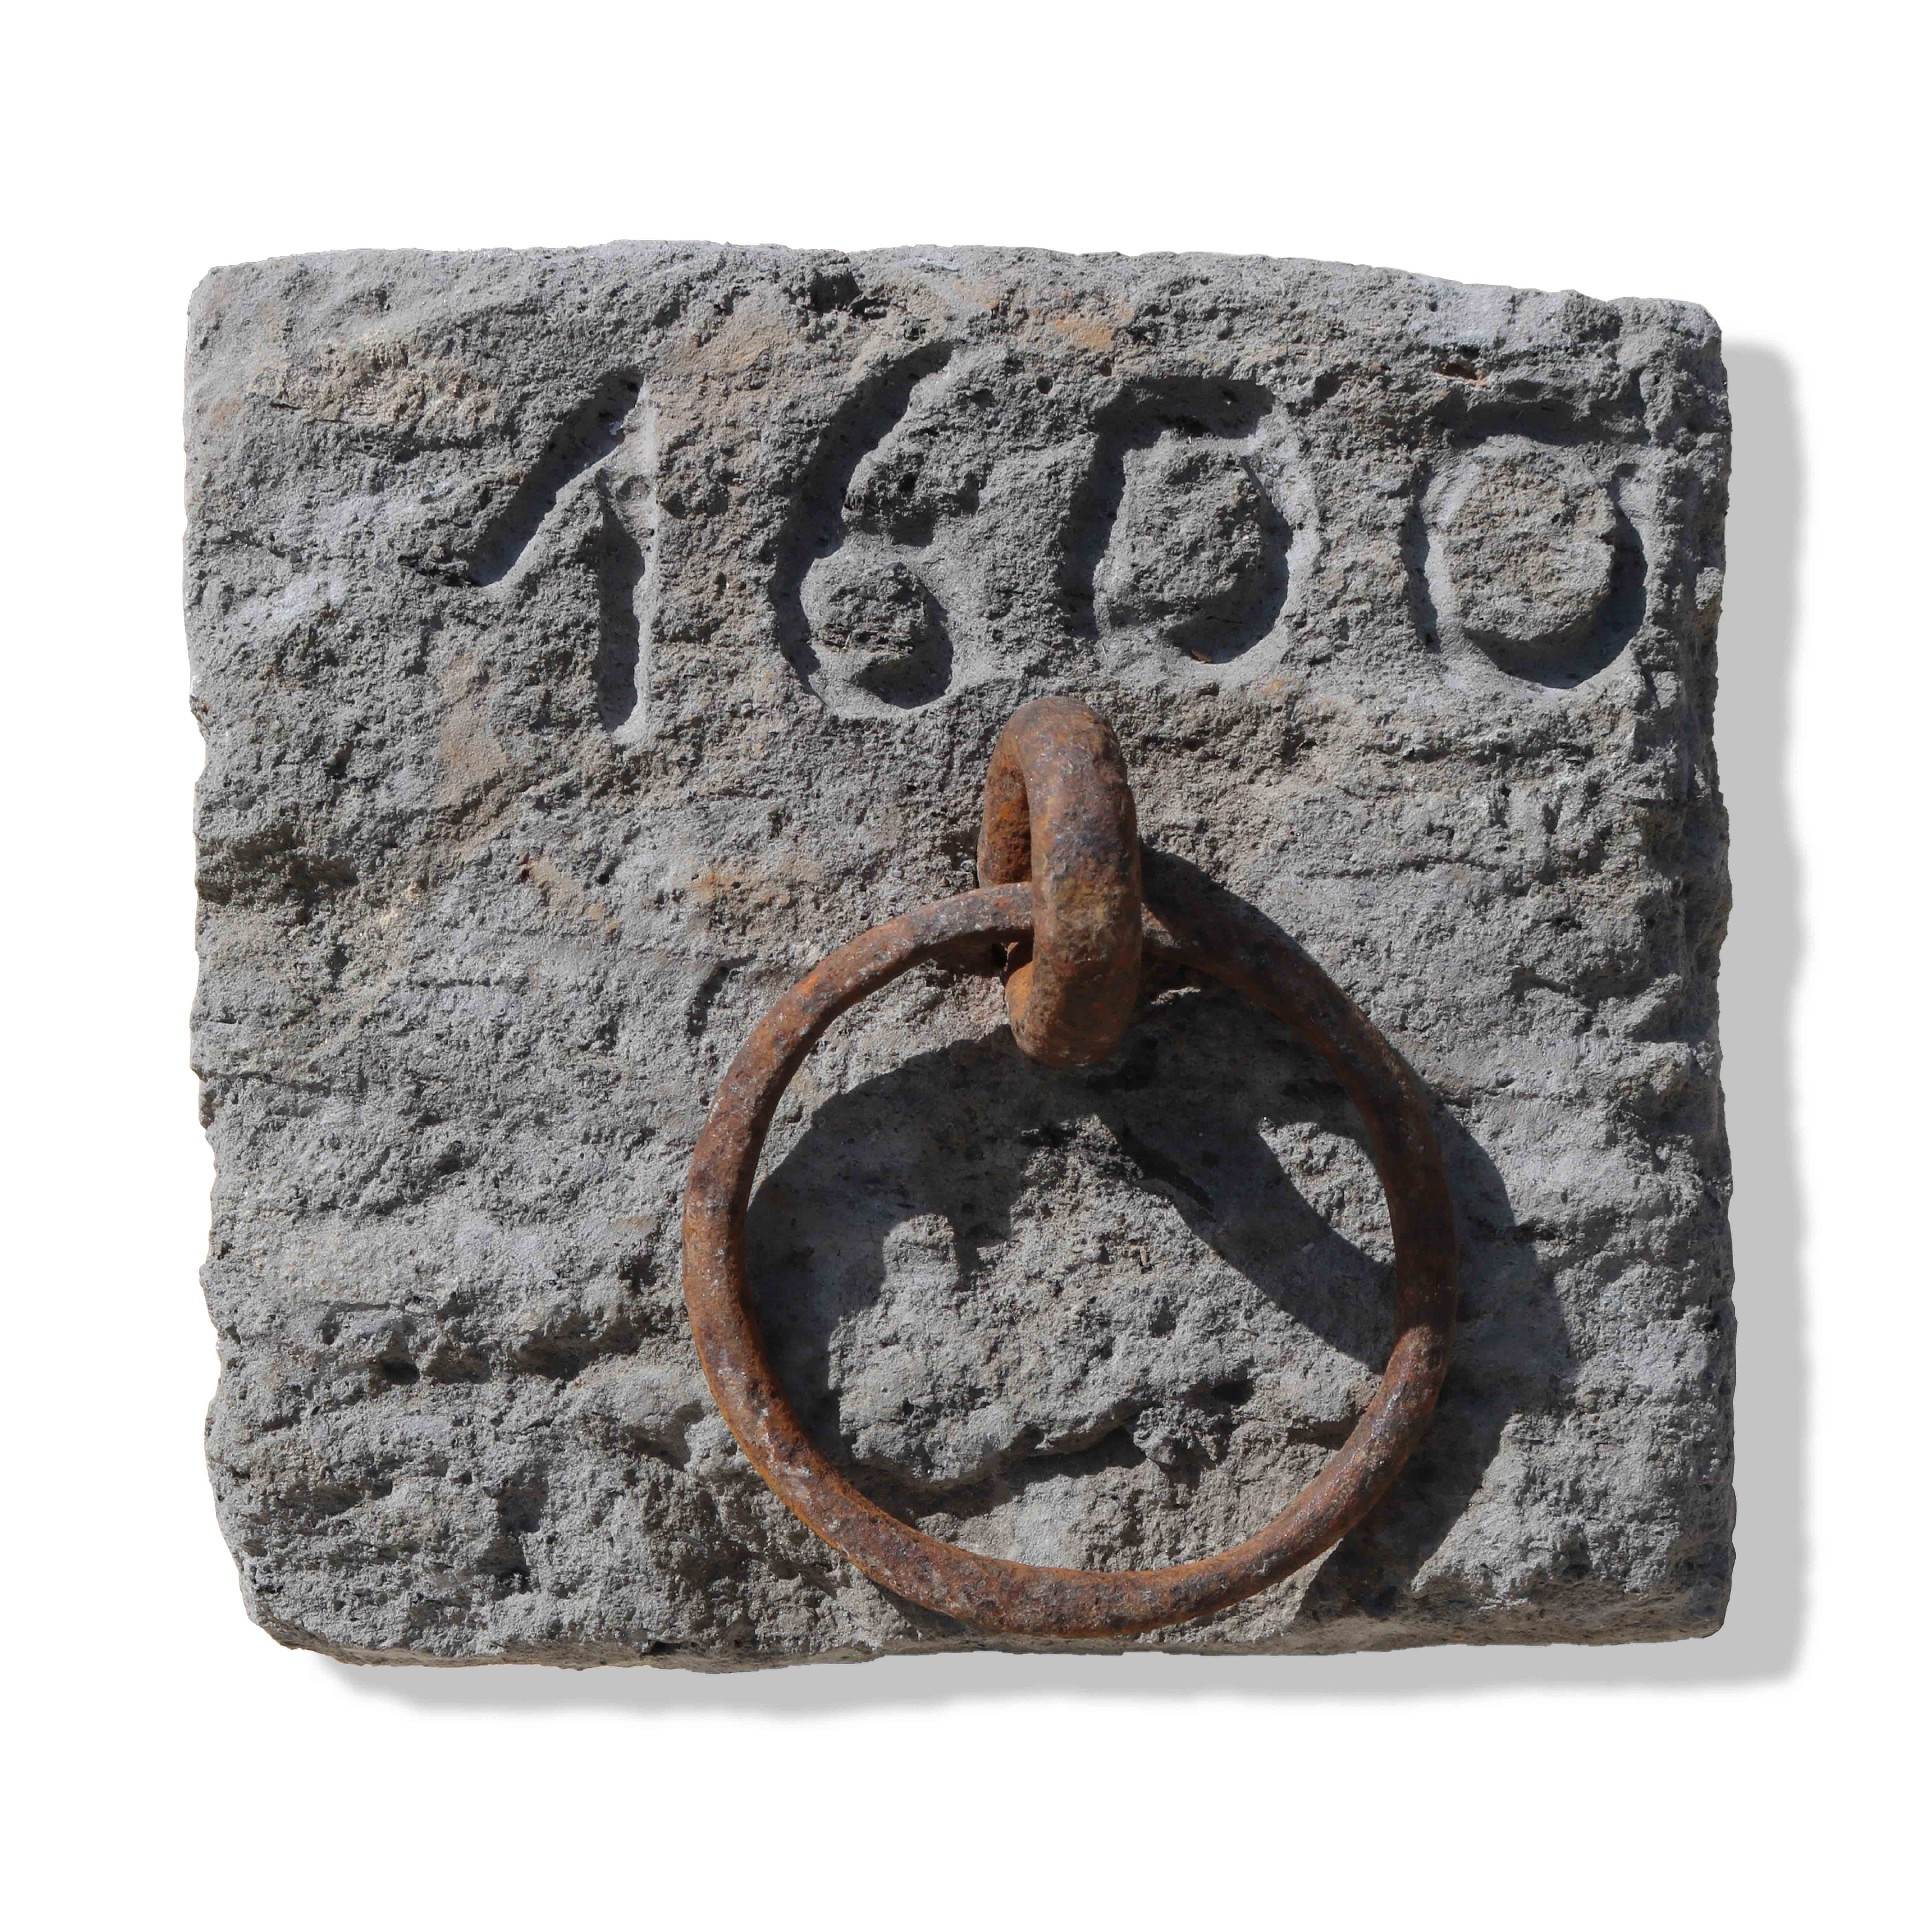 Ferma cavallo antico in pietra datato 1600. - 1